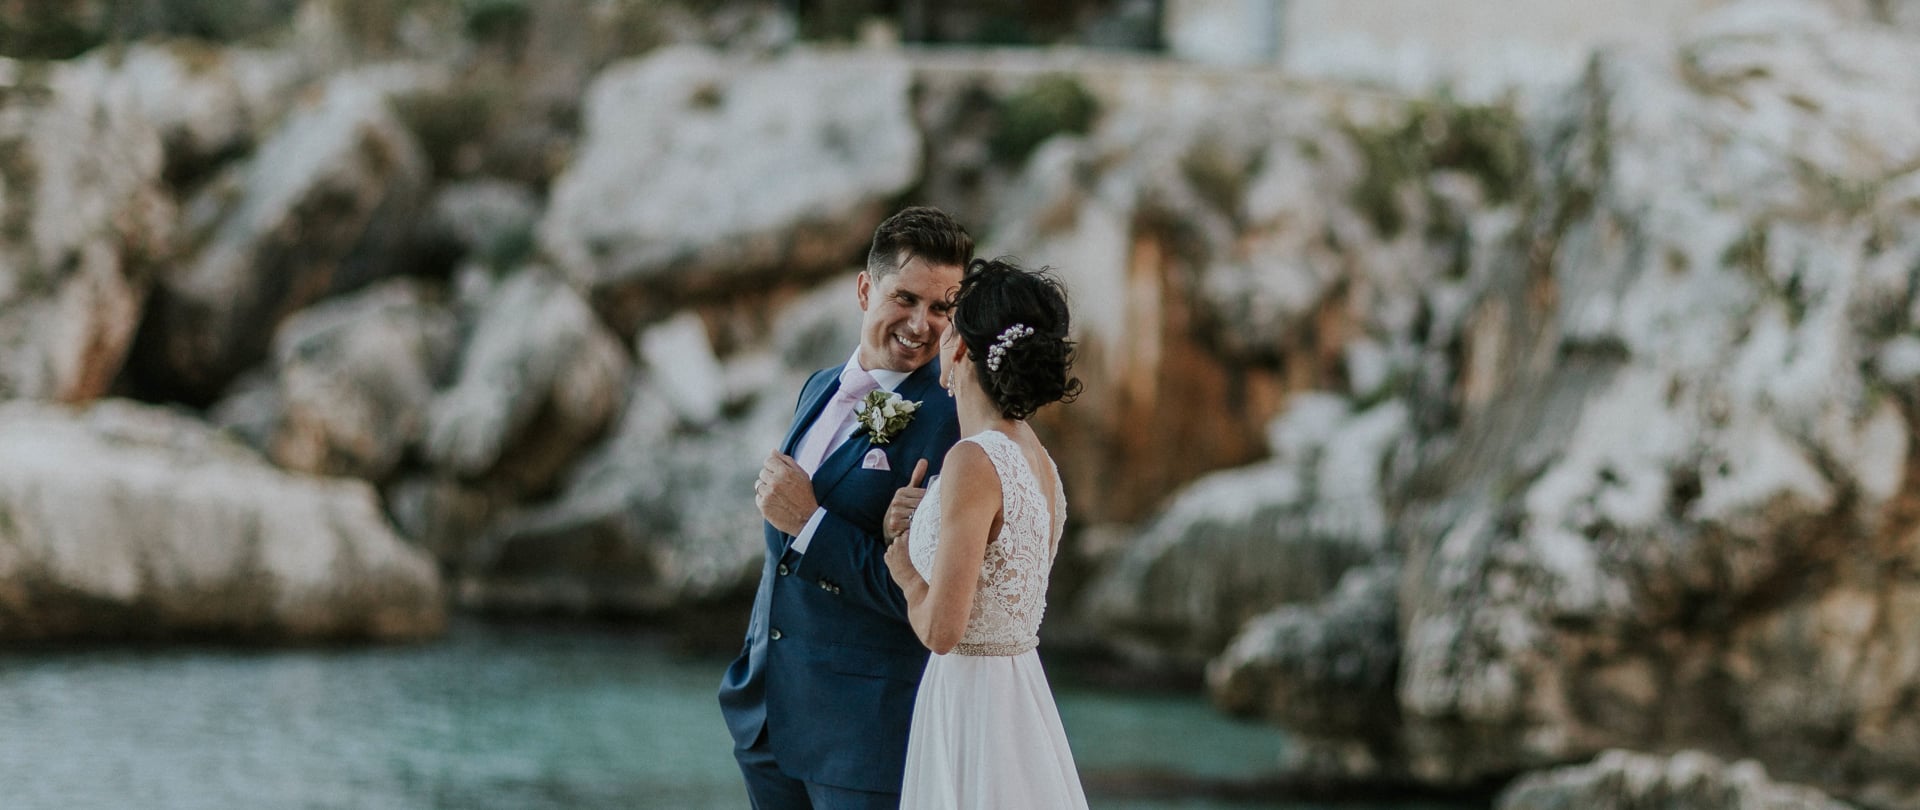 Christina & Justin Wedding Video Filmed at Sicily, Italy